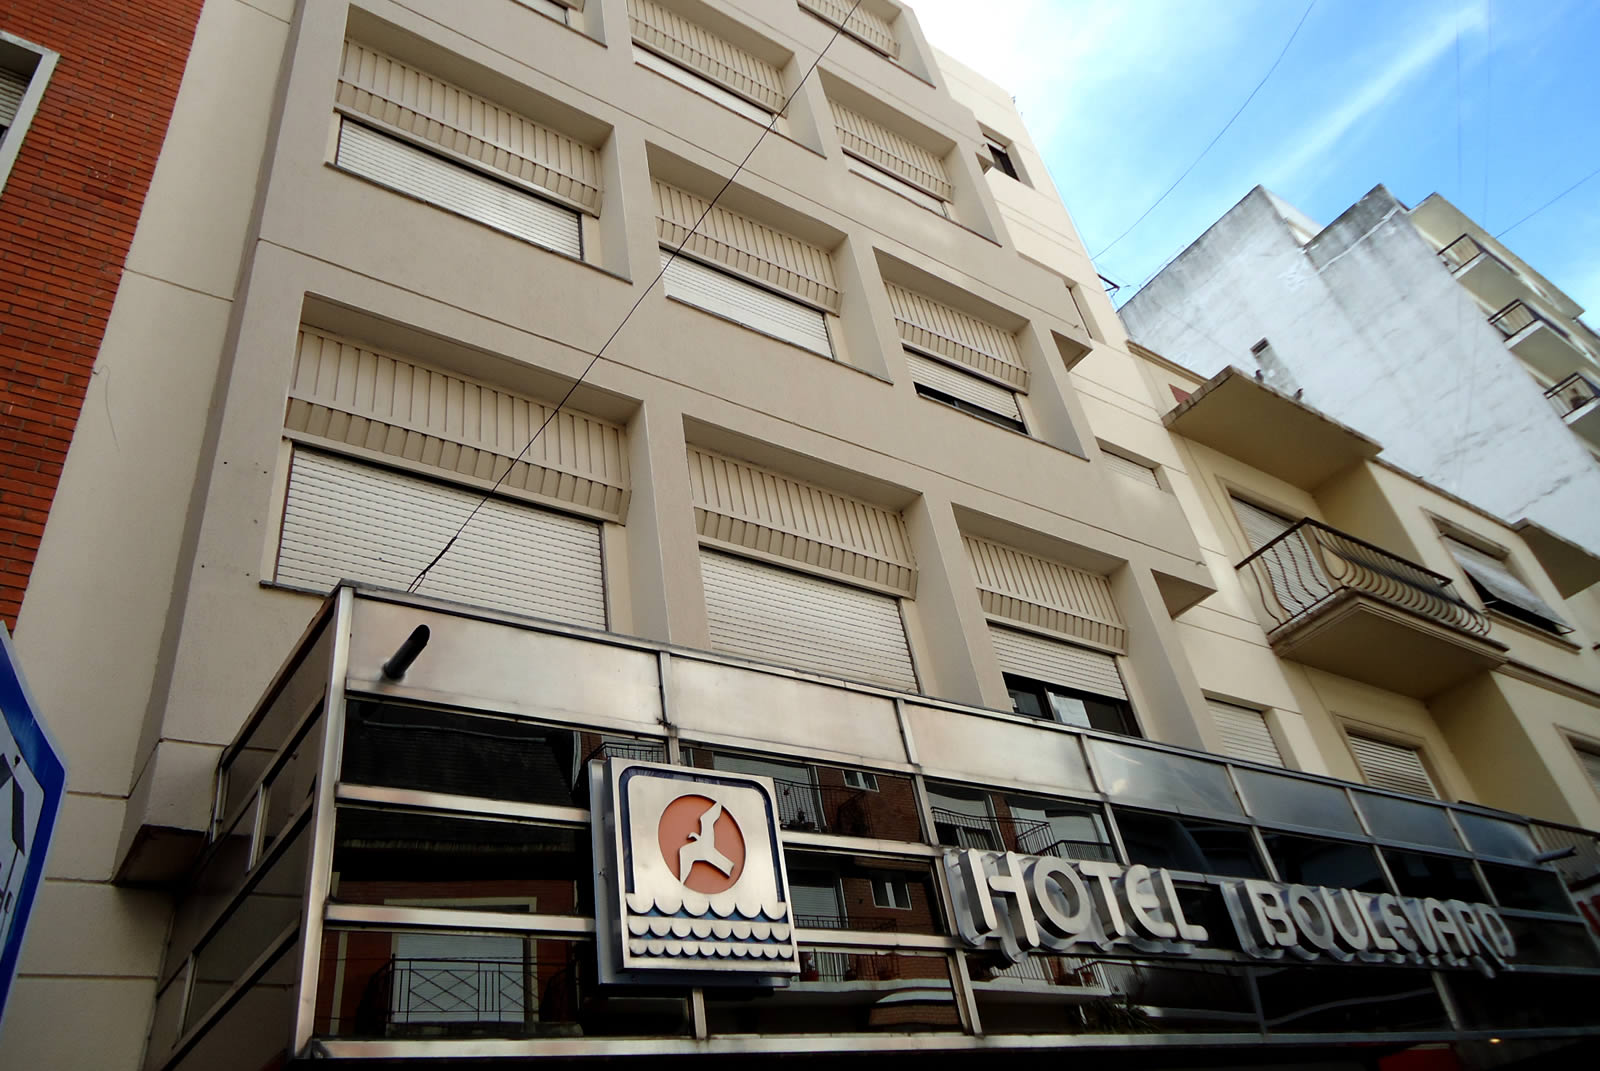 Hotel Boulevard, Mar del Plata